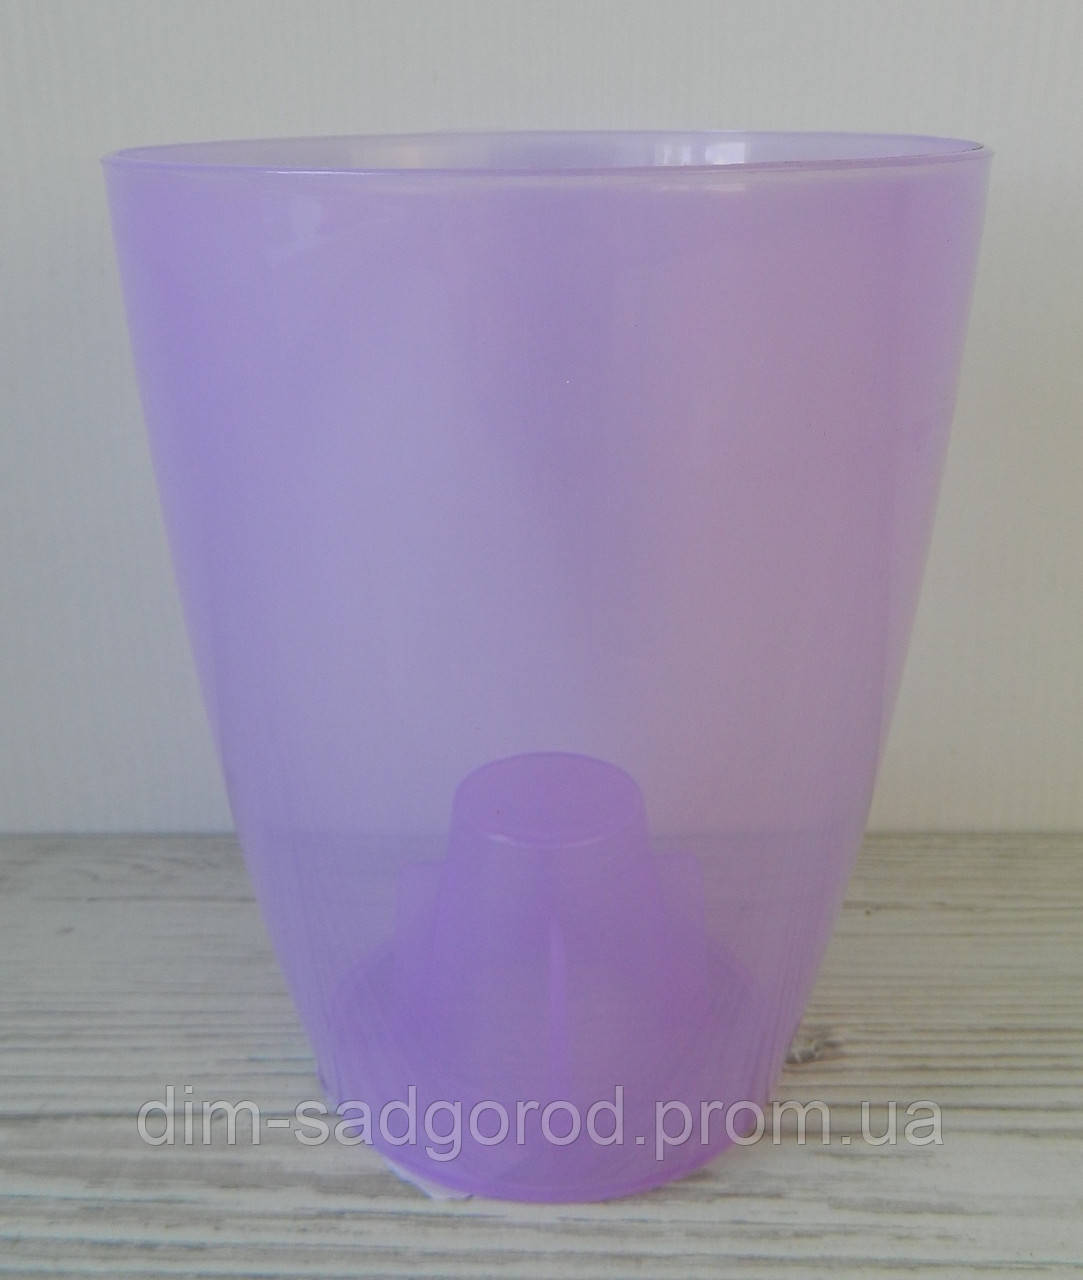 Пластикове кашпо для орхідеї матове фіолетове коубі d13см